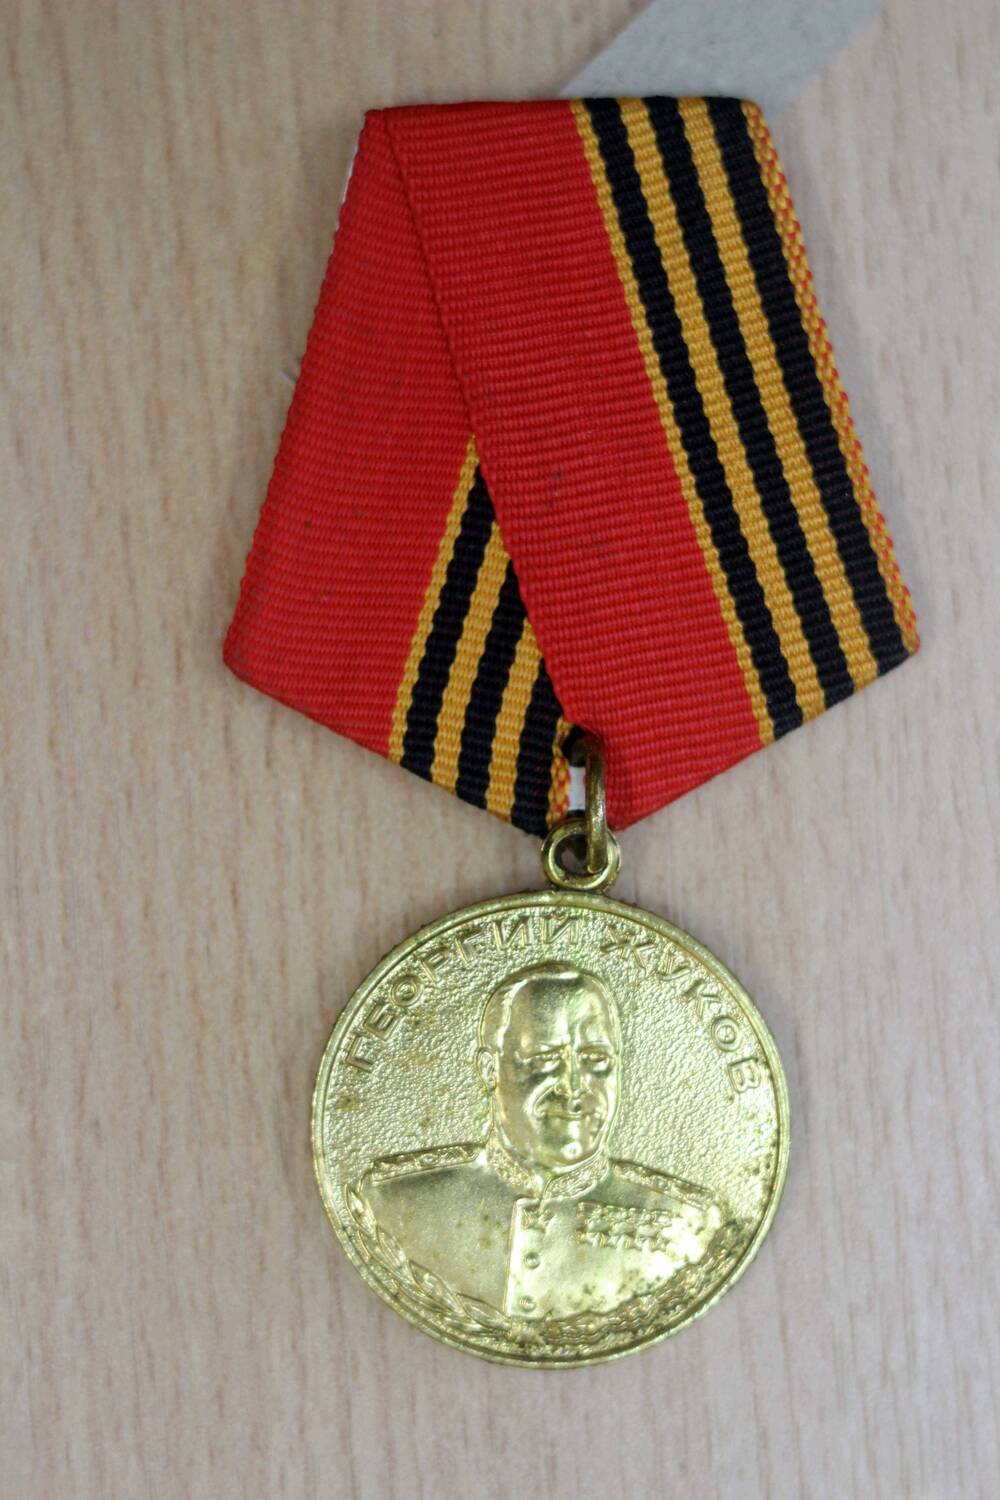 Медаль «Георгий Жуков» Циклакова Николая Георгиевича. 1996 год. Подлинник.